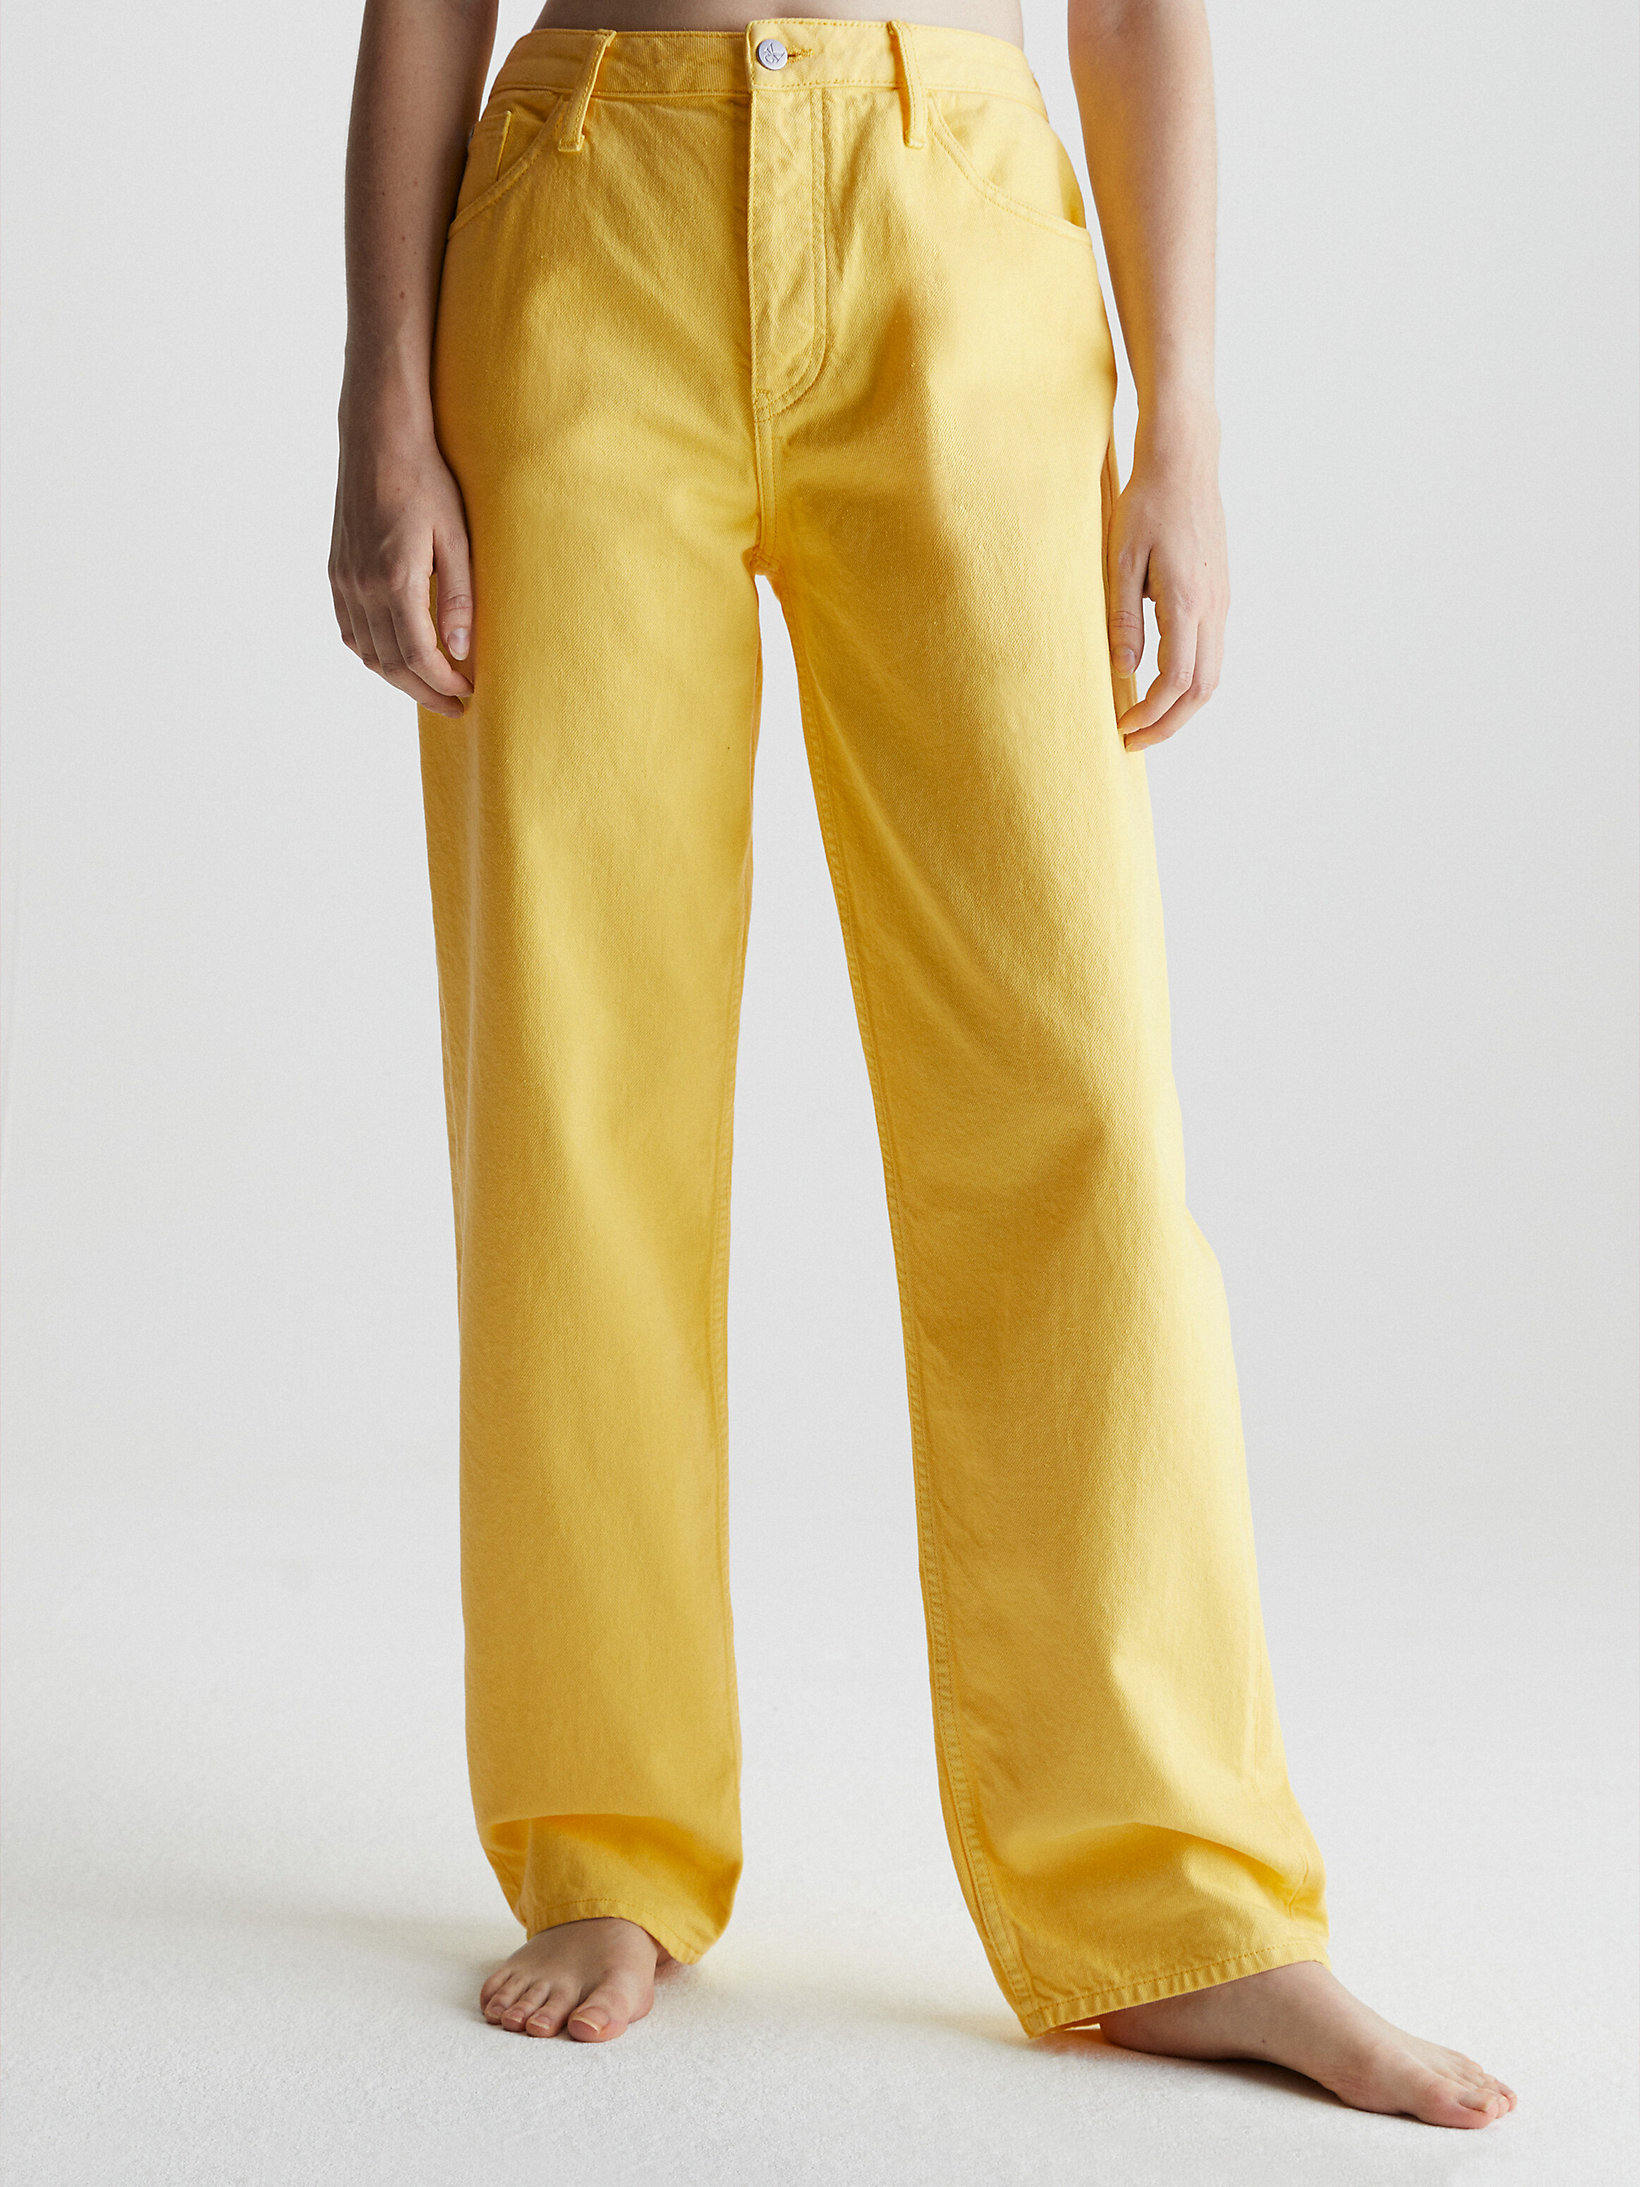 Primrose Yellow Gerade Geschnittene Jeans Im Neunzigerjahre-Look undefined Damen Calvin Klein